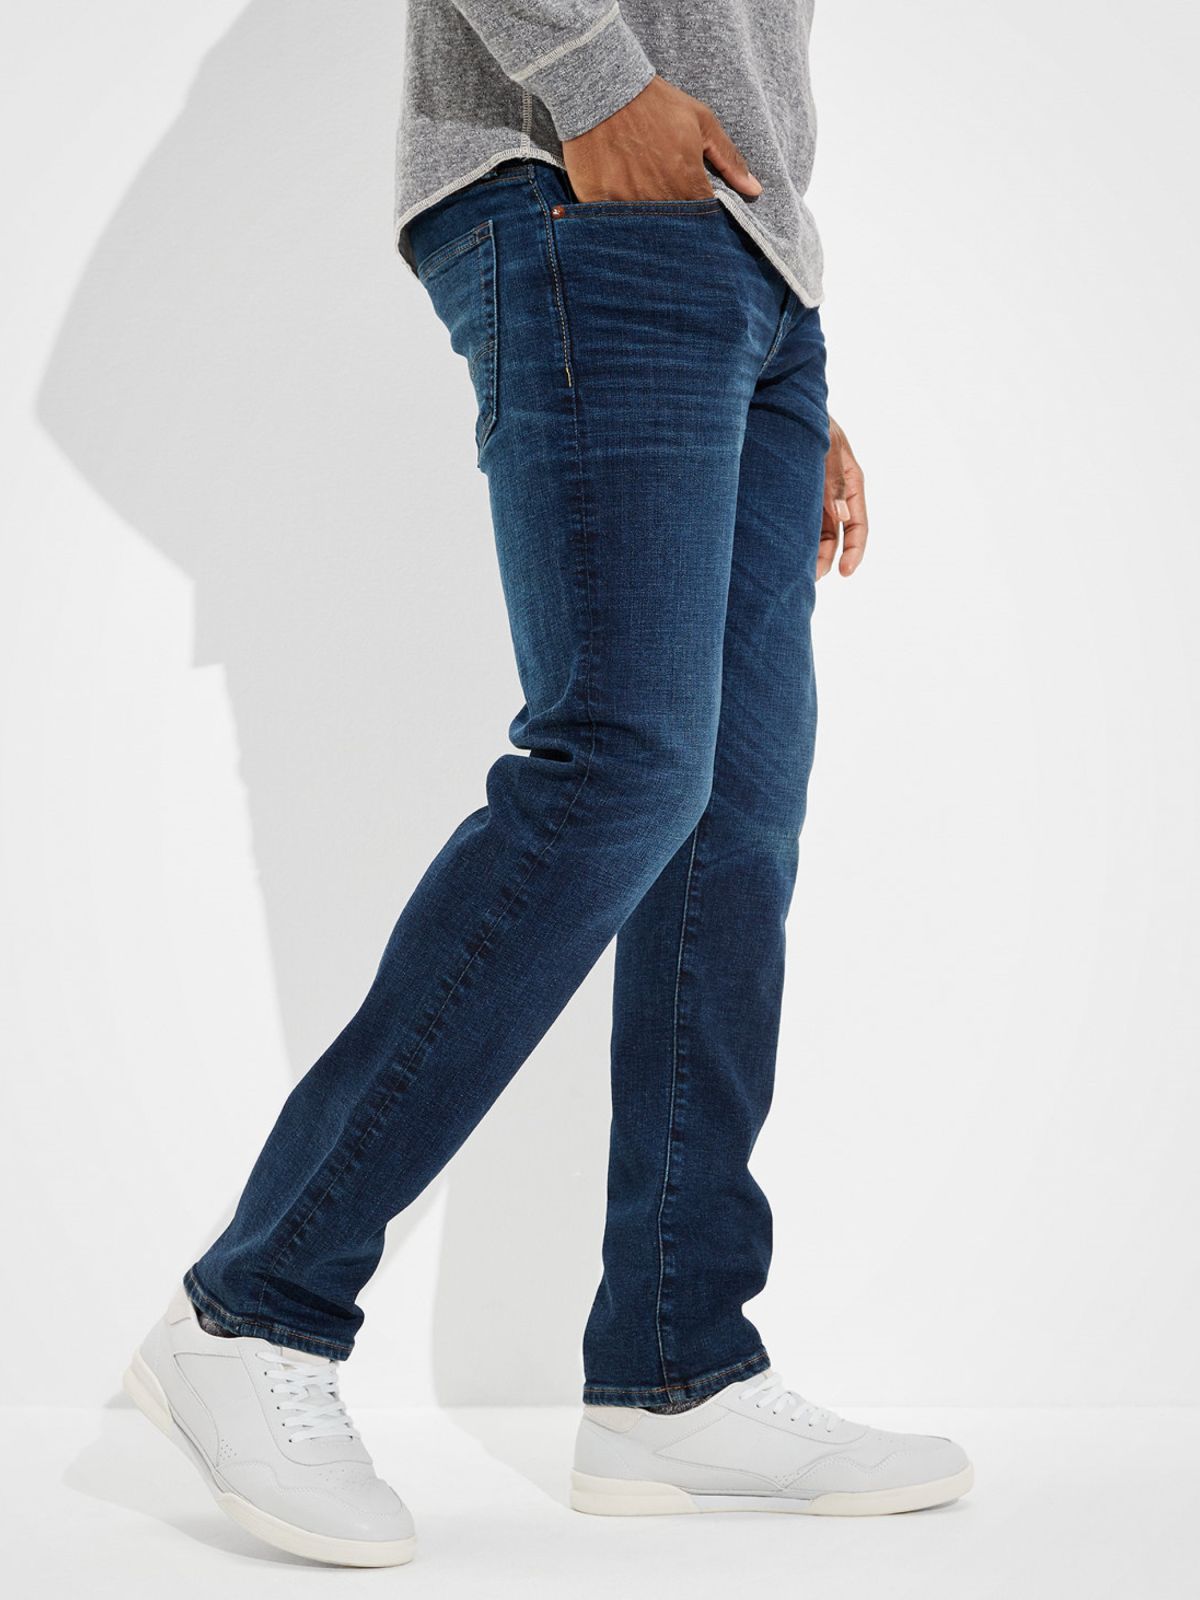  ג'ינס ארוך בגזרת Slim Straight של AMERICAN EAGLE